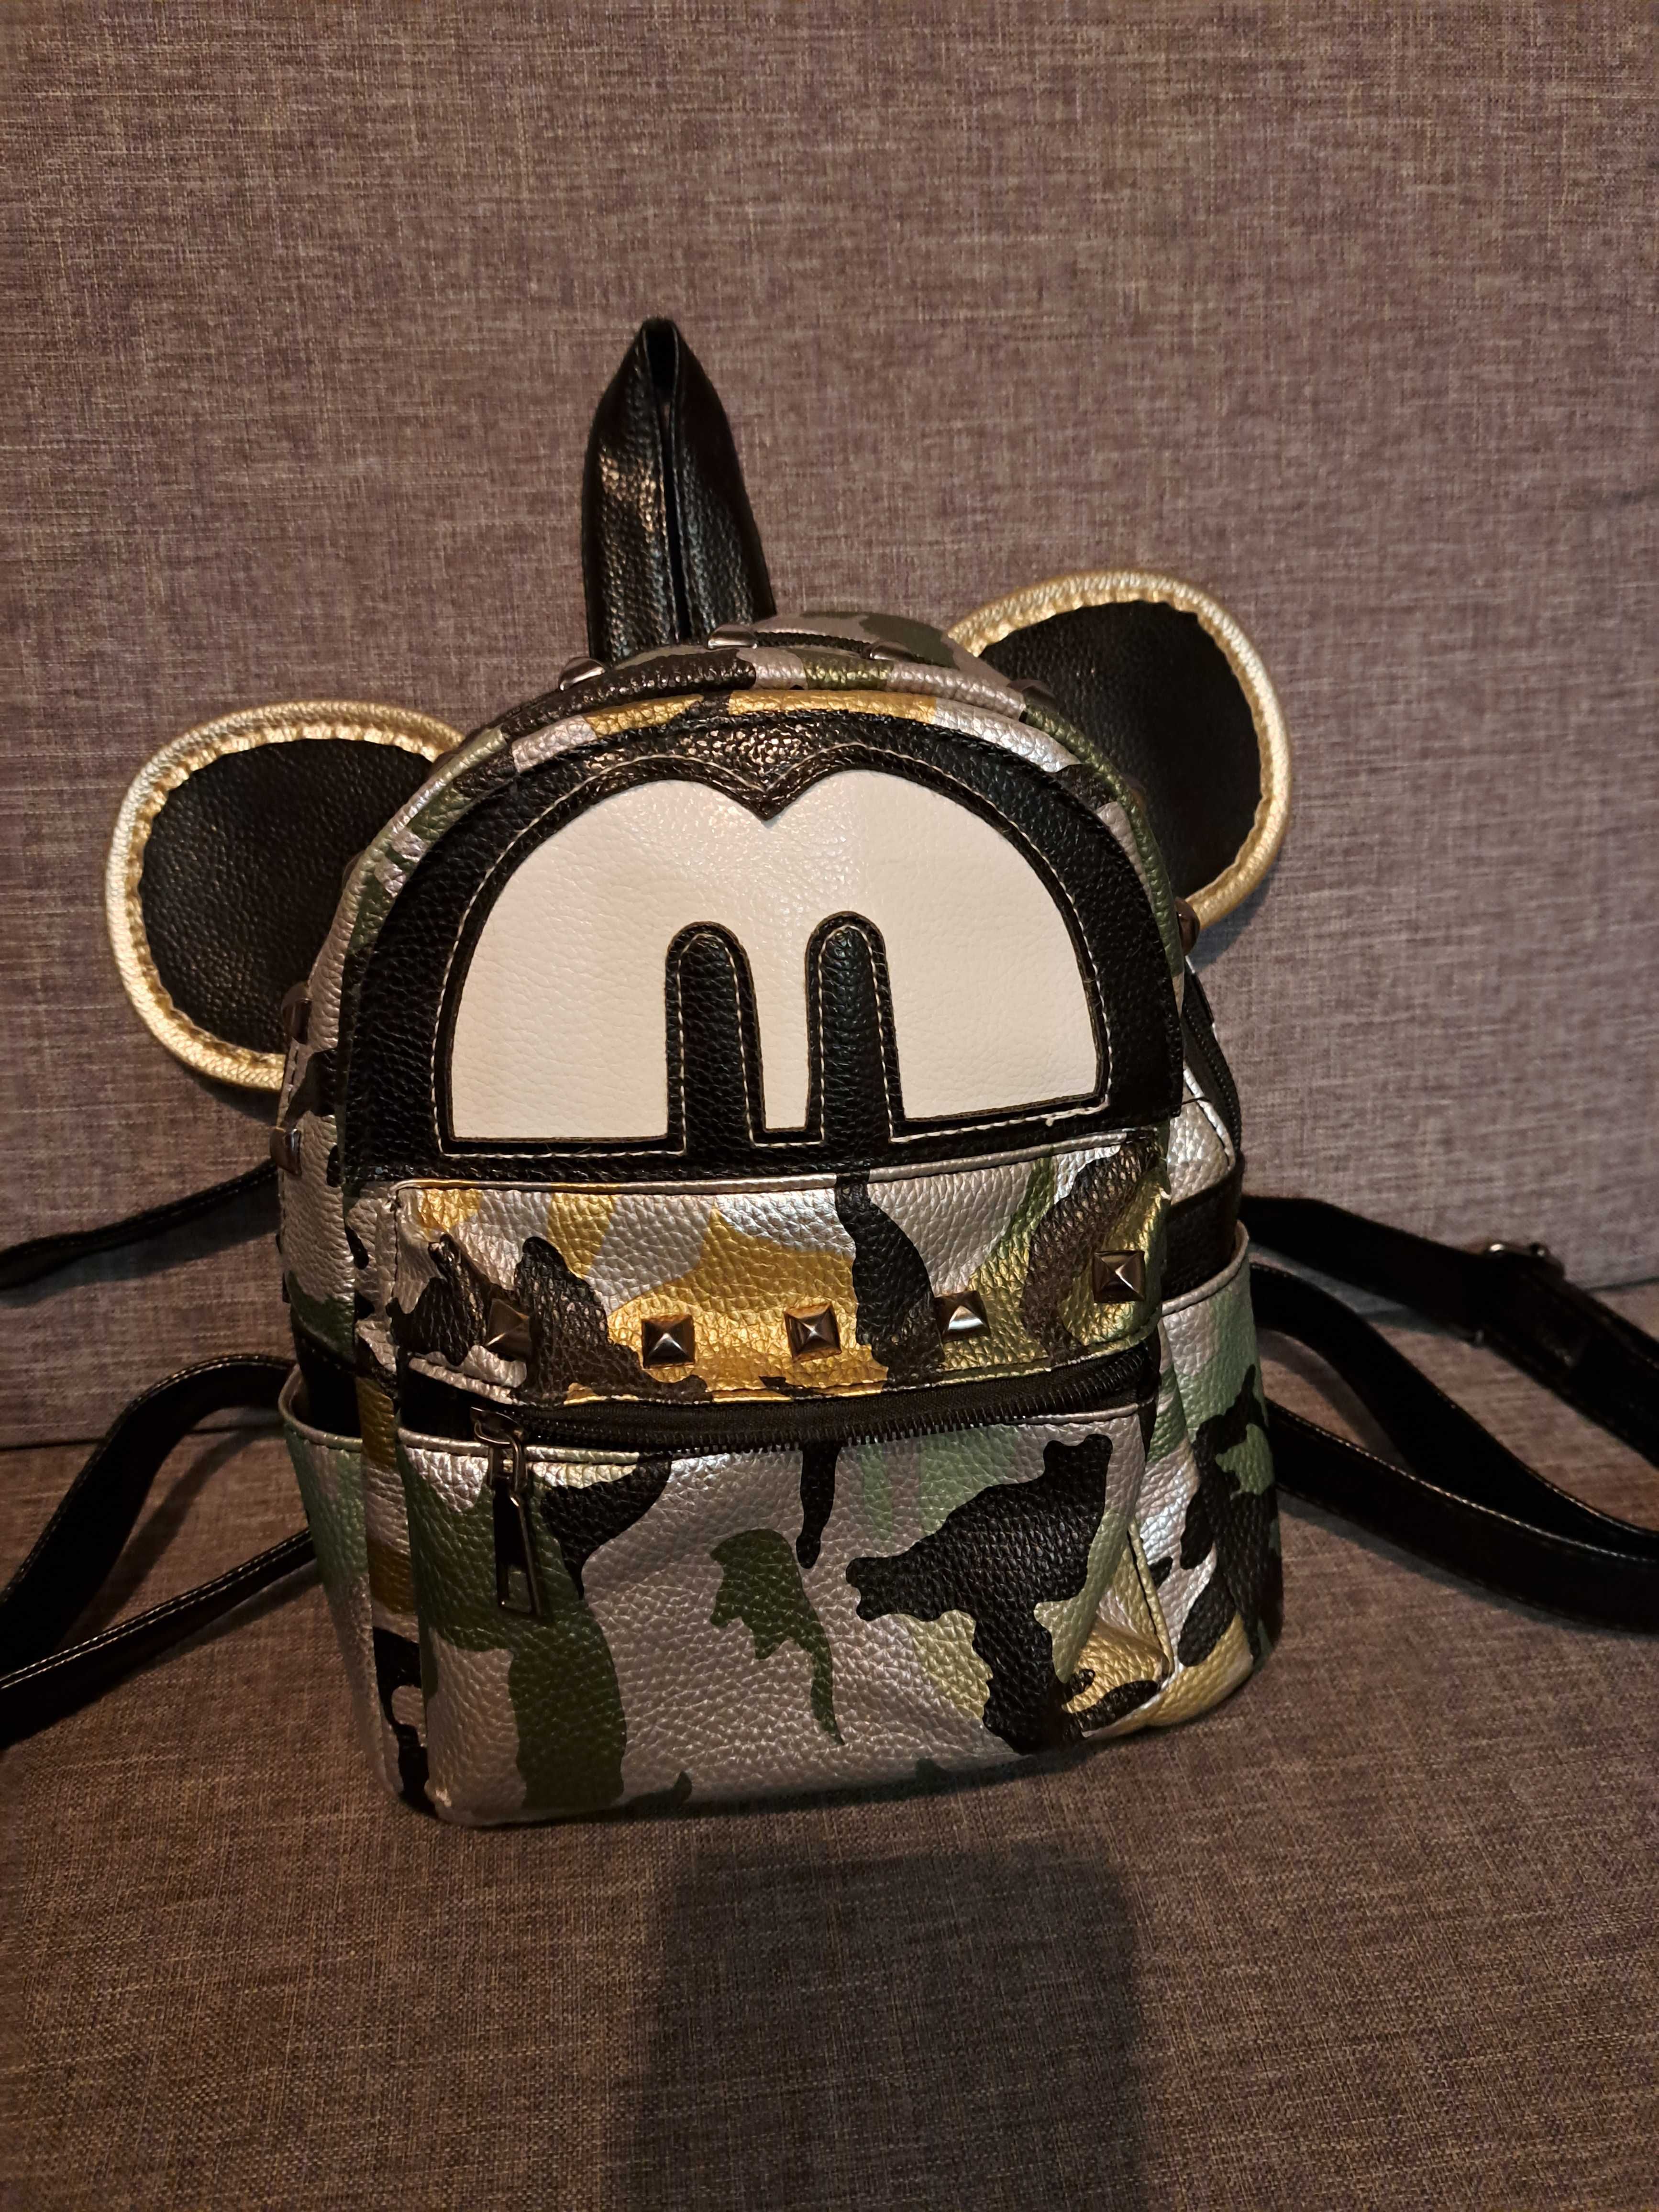 Plecak, plecaczek Myszka Mickey moro ecoskóra 23x23x12